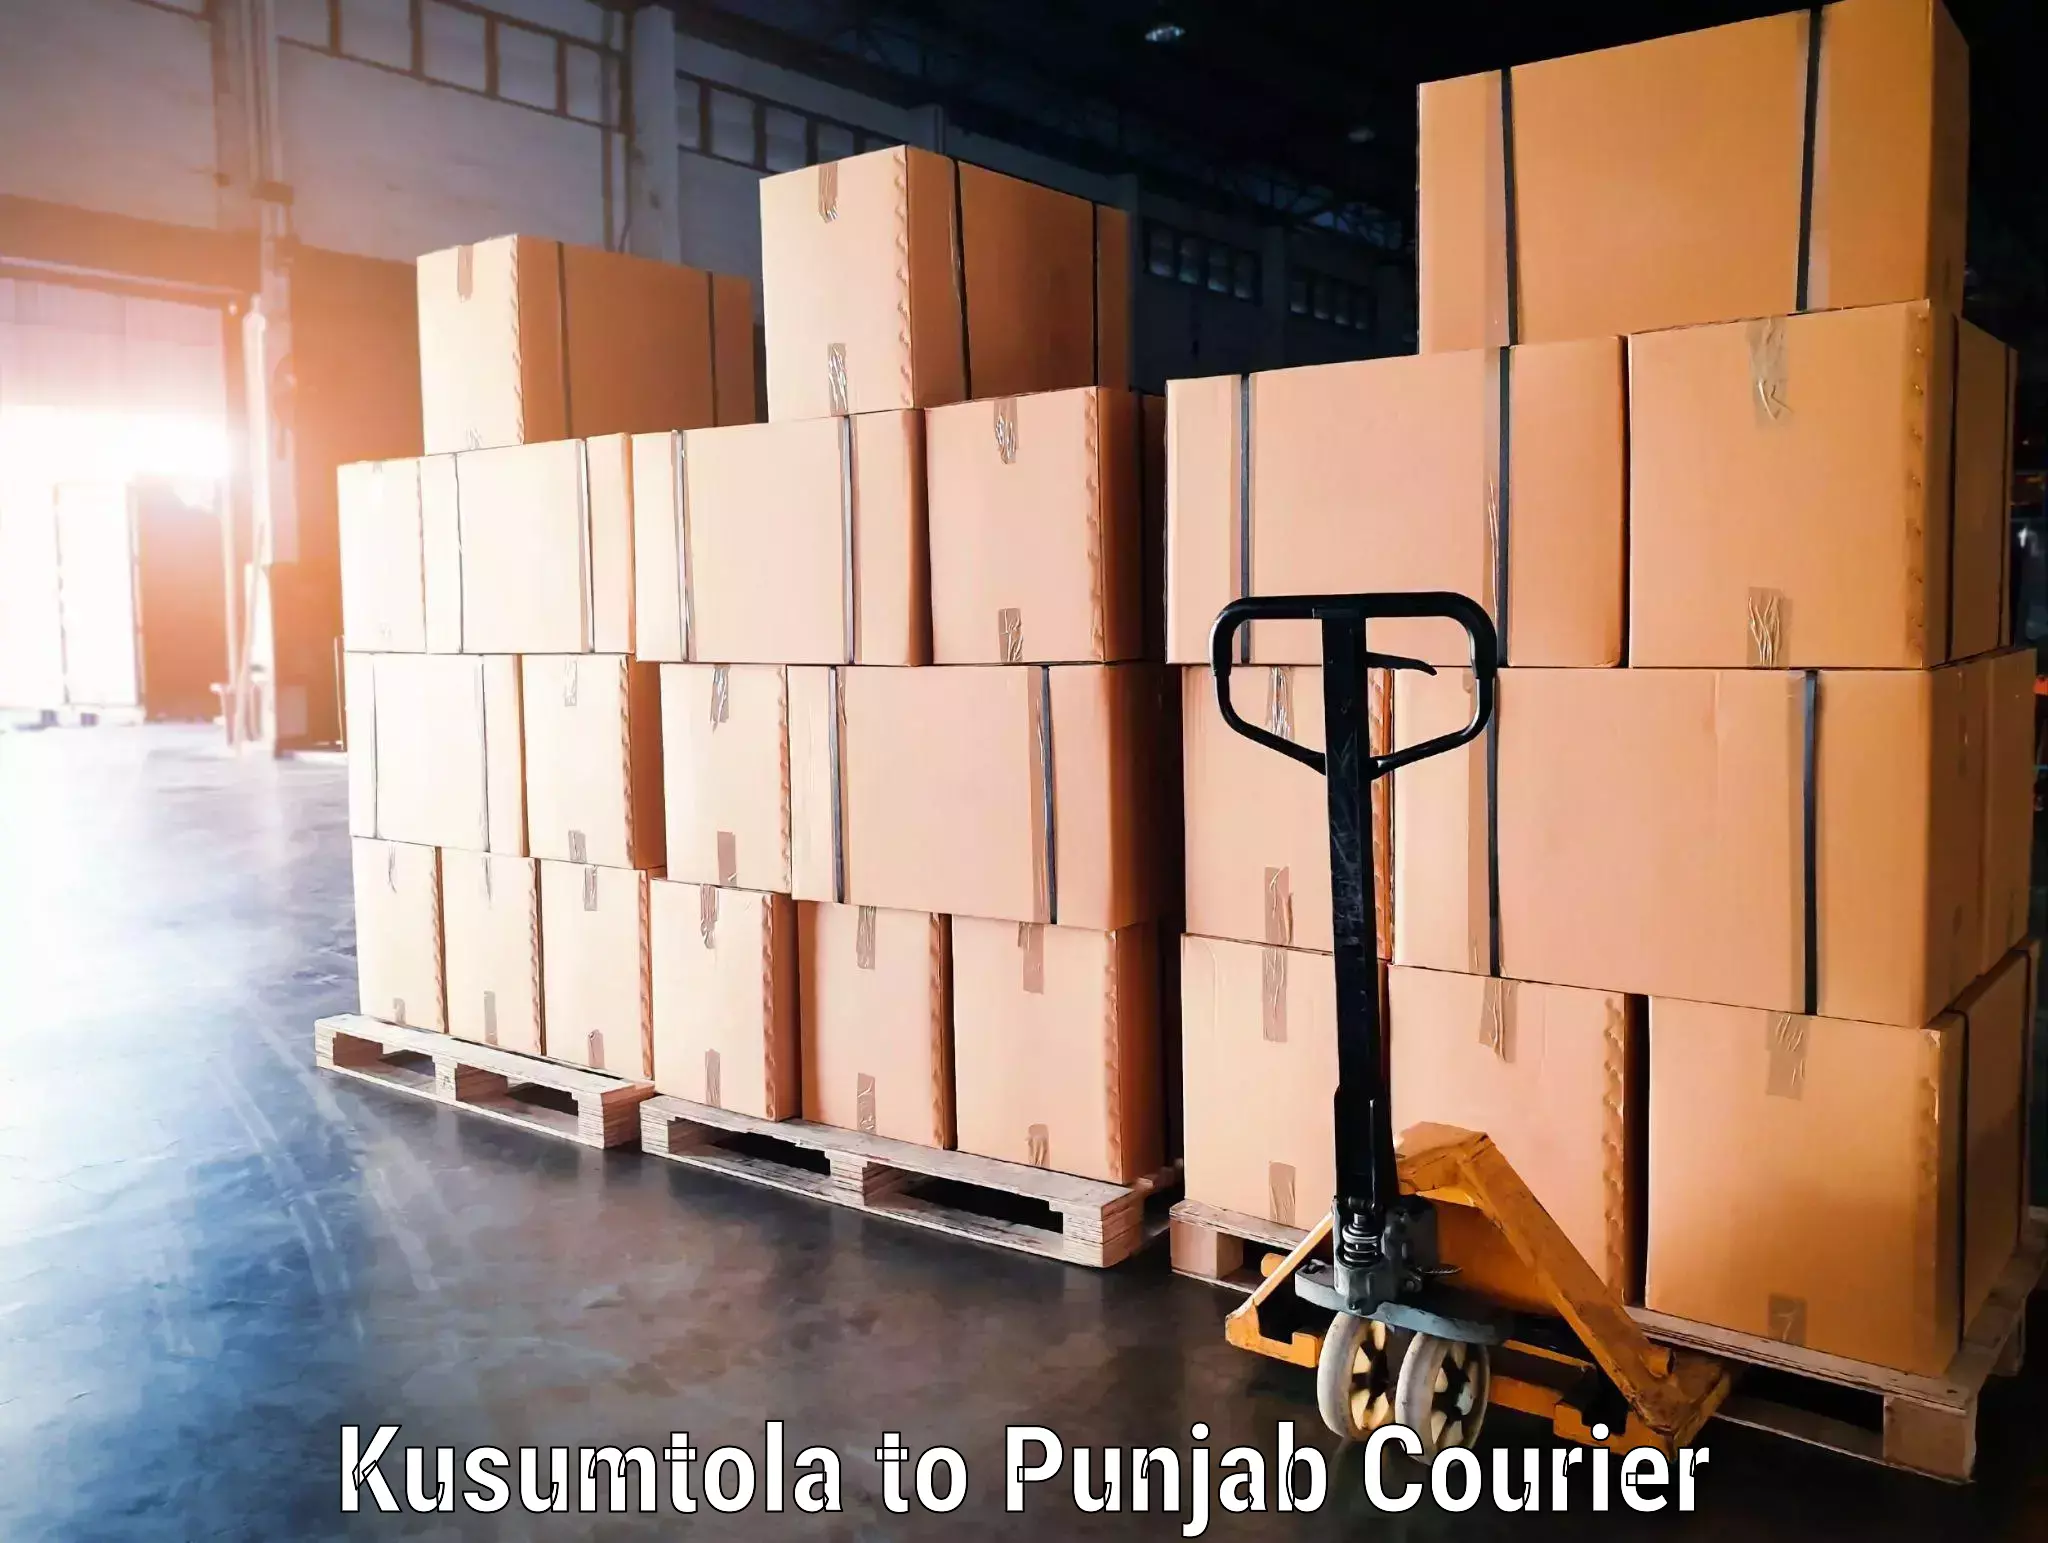 Same day luggage service Kusumtola to Central University of Punjab Bathinda